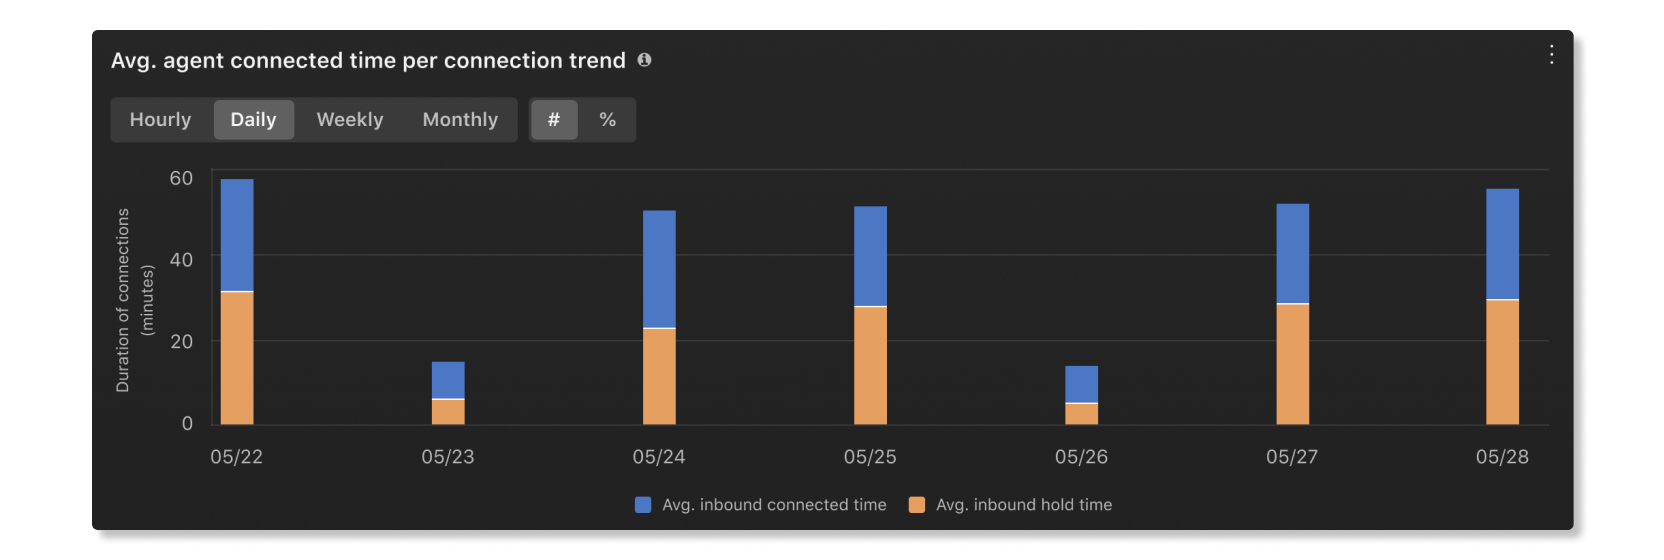 Média de tempo de conexão do agente por gráfico de tendências em Estatísticas do agente da análise de fundamentos do cliente